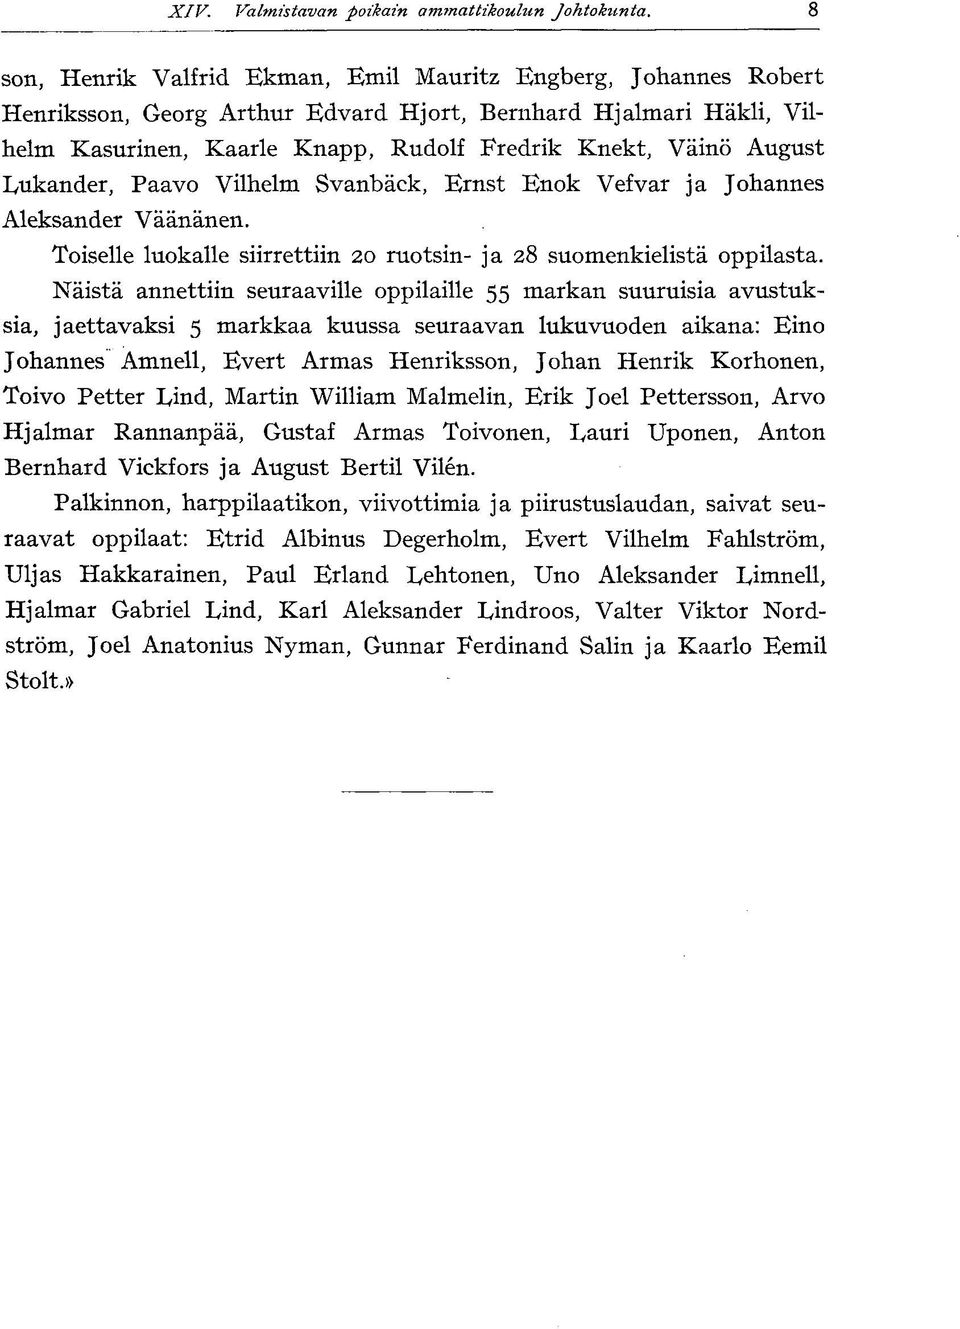 IyUkander, Paavo Vilhelm Svanbäck, Ernst Enok Vefvar ja Johannes Aleksander Väänänen. Toiselle luokalle siirrettiin 20 ruotsin- ja 28 suomenkielistä oppilasta.